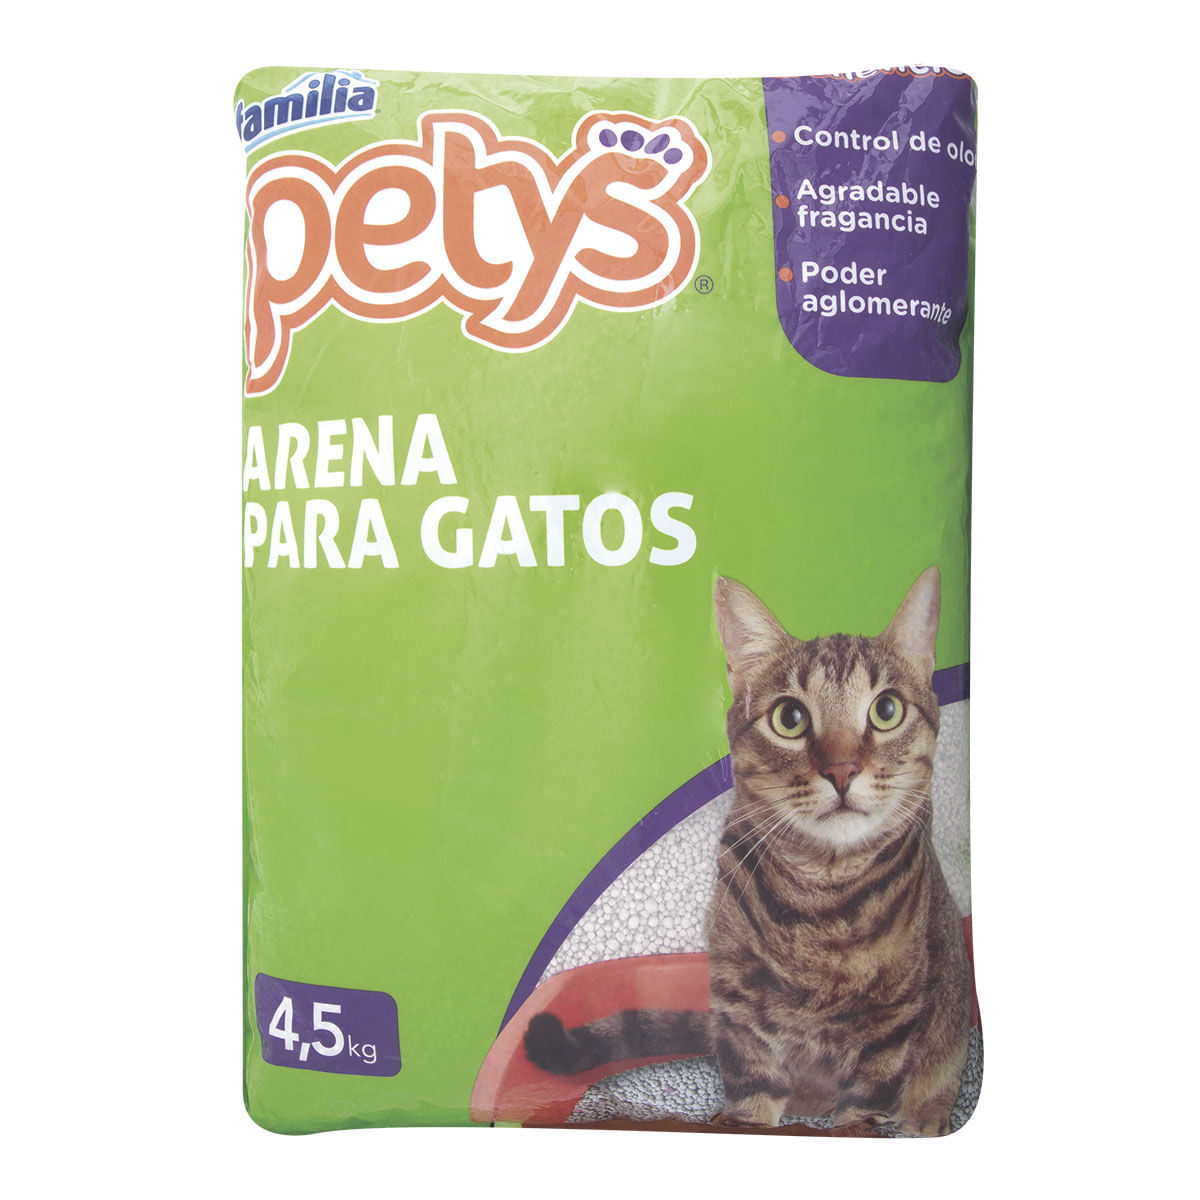 Arena para Gatos Petys 4.5kg - La Res